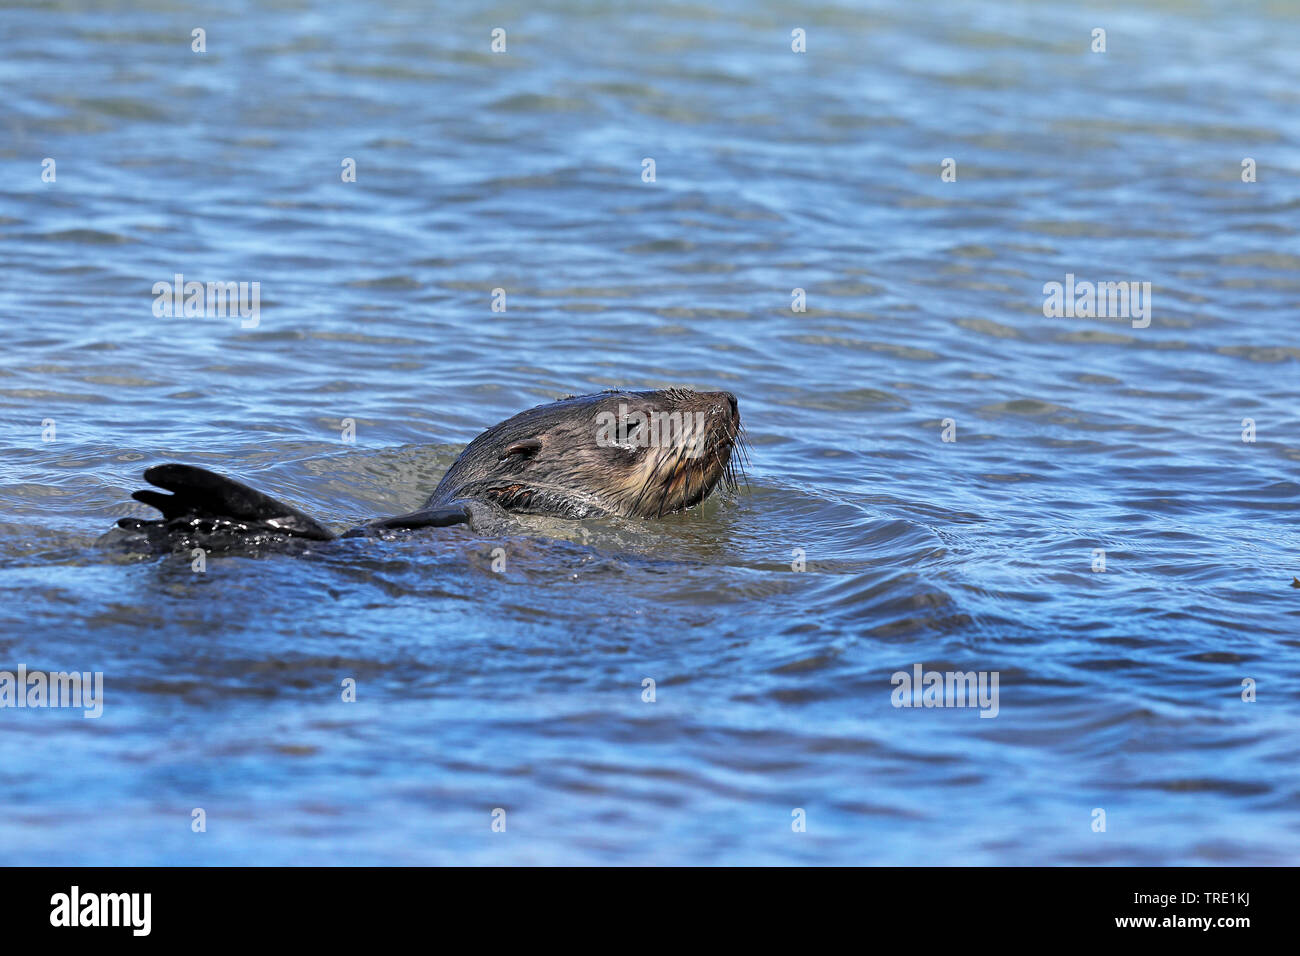 Afrikanische Clawless Otter (Aonyx capensis), Schwimmen im Meer, Südafrika, Western Cape, Kap der Guten Hoffnung Nationalpark Stockfoto